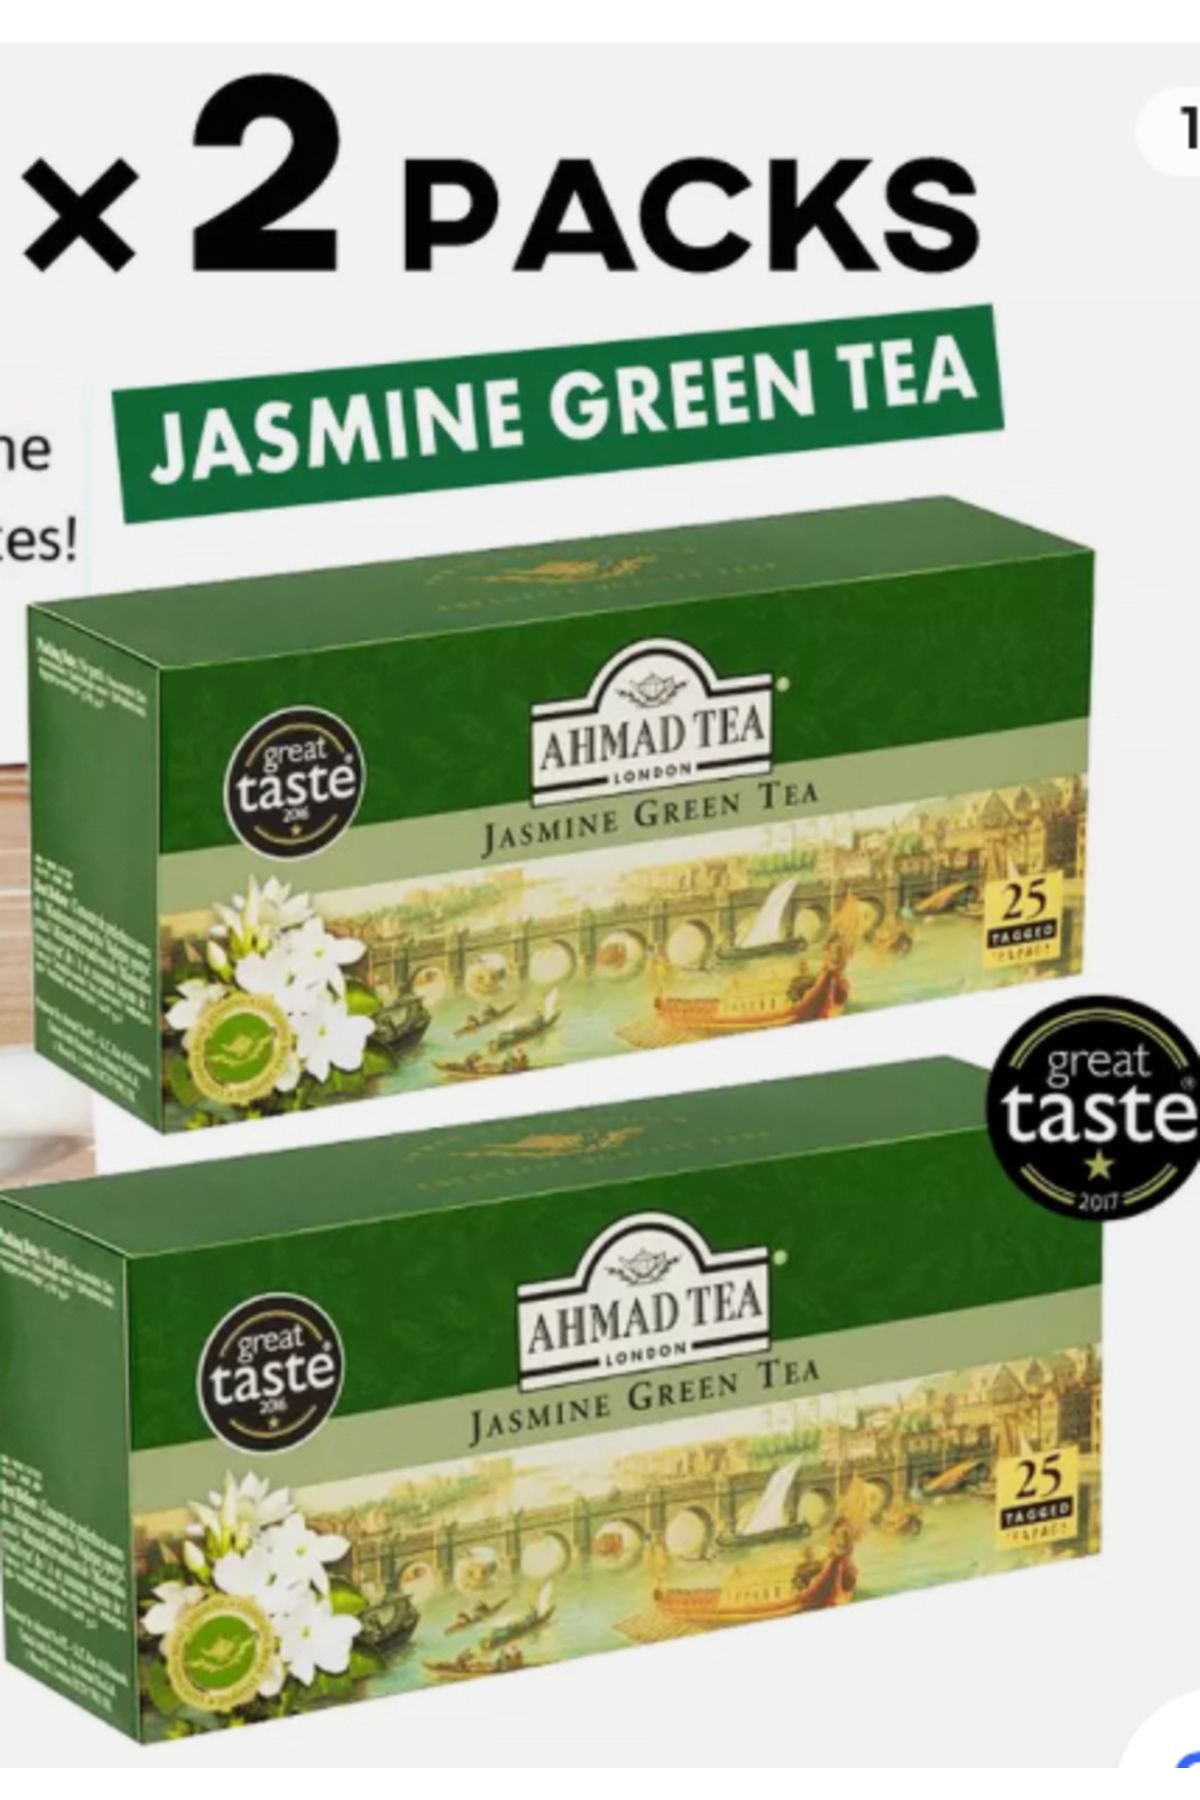 Ahmad Tea Yaseminli Yeşil Çay Green Tea Jasmine Ahmad Tea Exclusive Classic Quality 25 TEA BAGS x 2